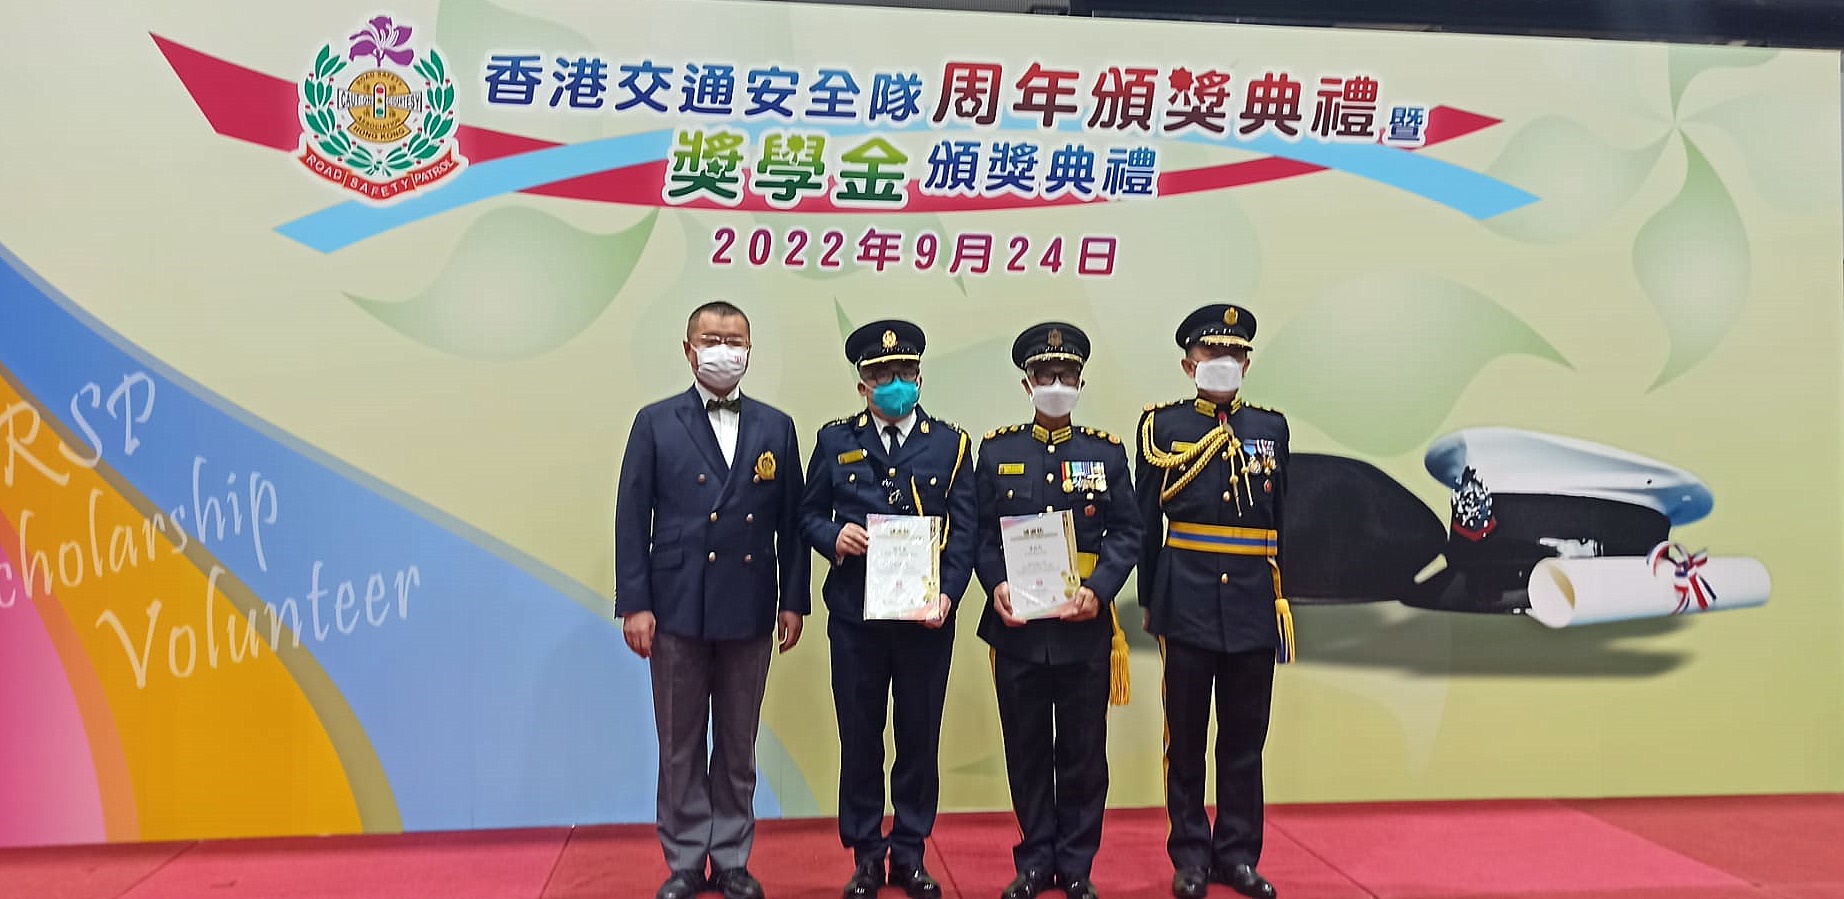 2022年9月24日香港交通安全隊周年頒獎典禮暨獎學金頒獎典禮